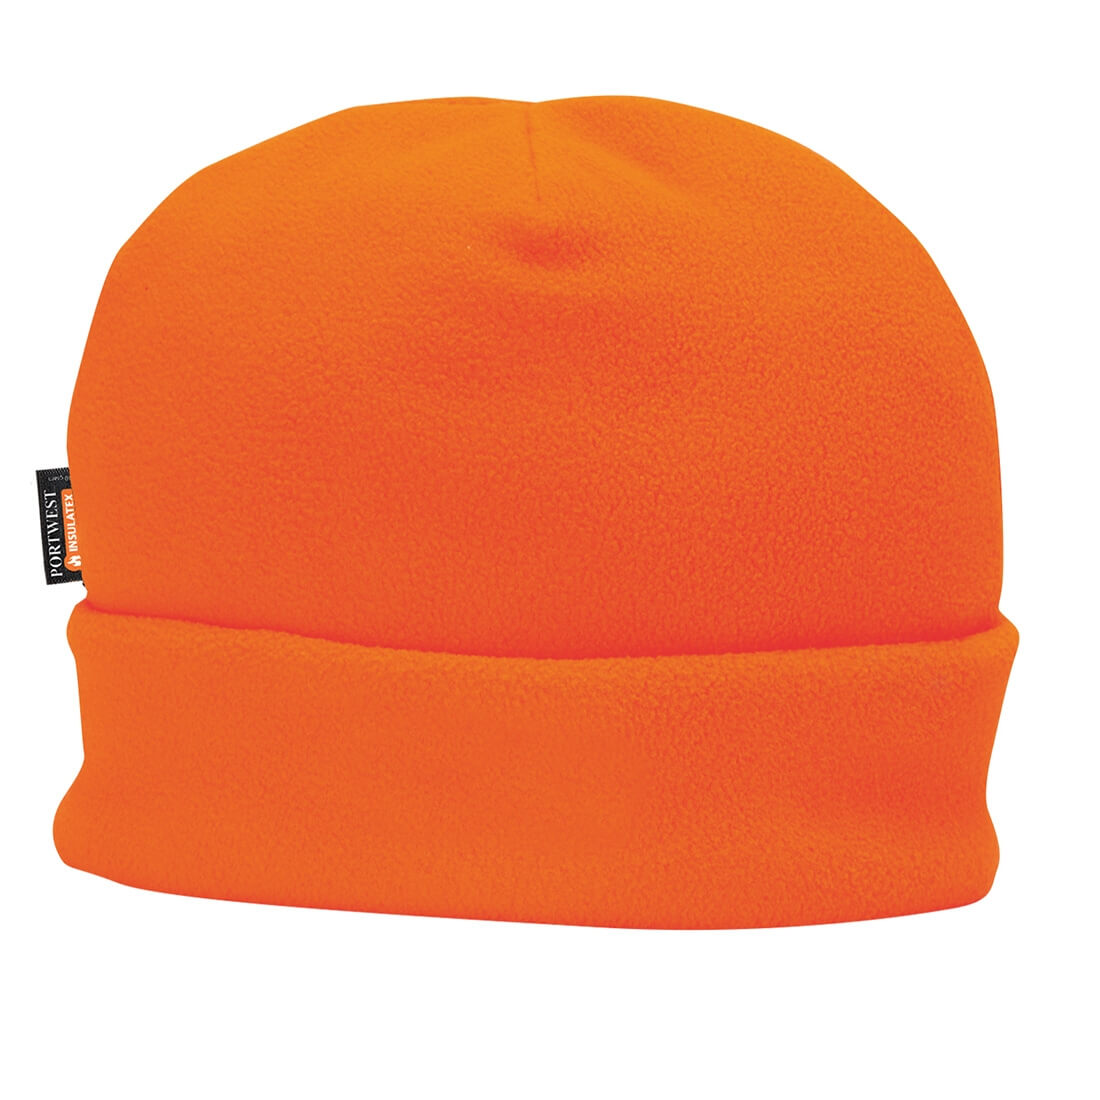 Fleece Hat Insulatex Lined - Safetywear